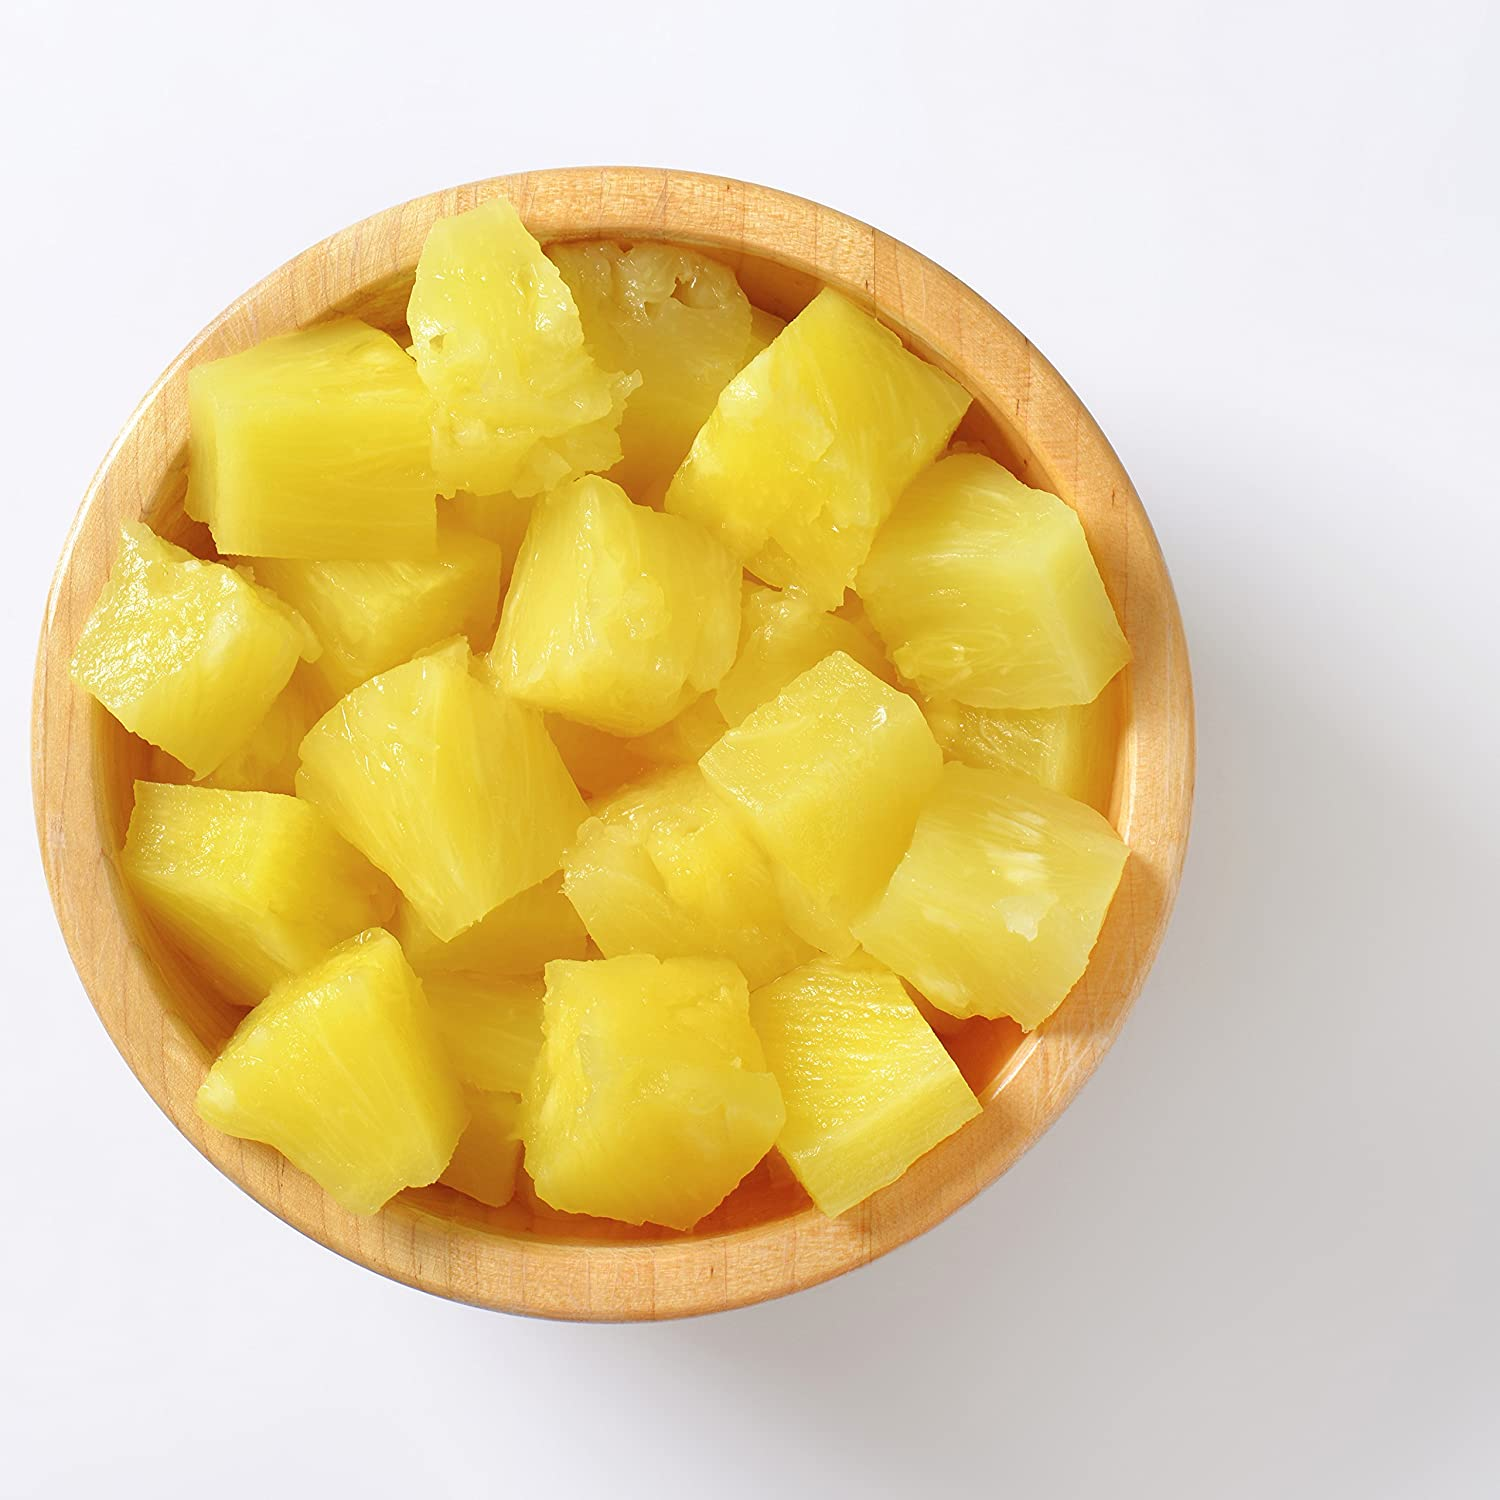 Augason Farms Freeze Dried Pineapple Chunks 12 Oz No. 10 Can, Na